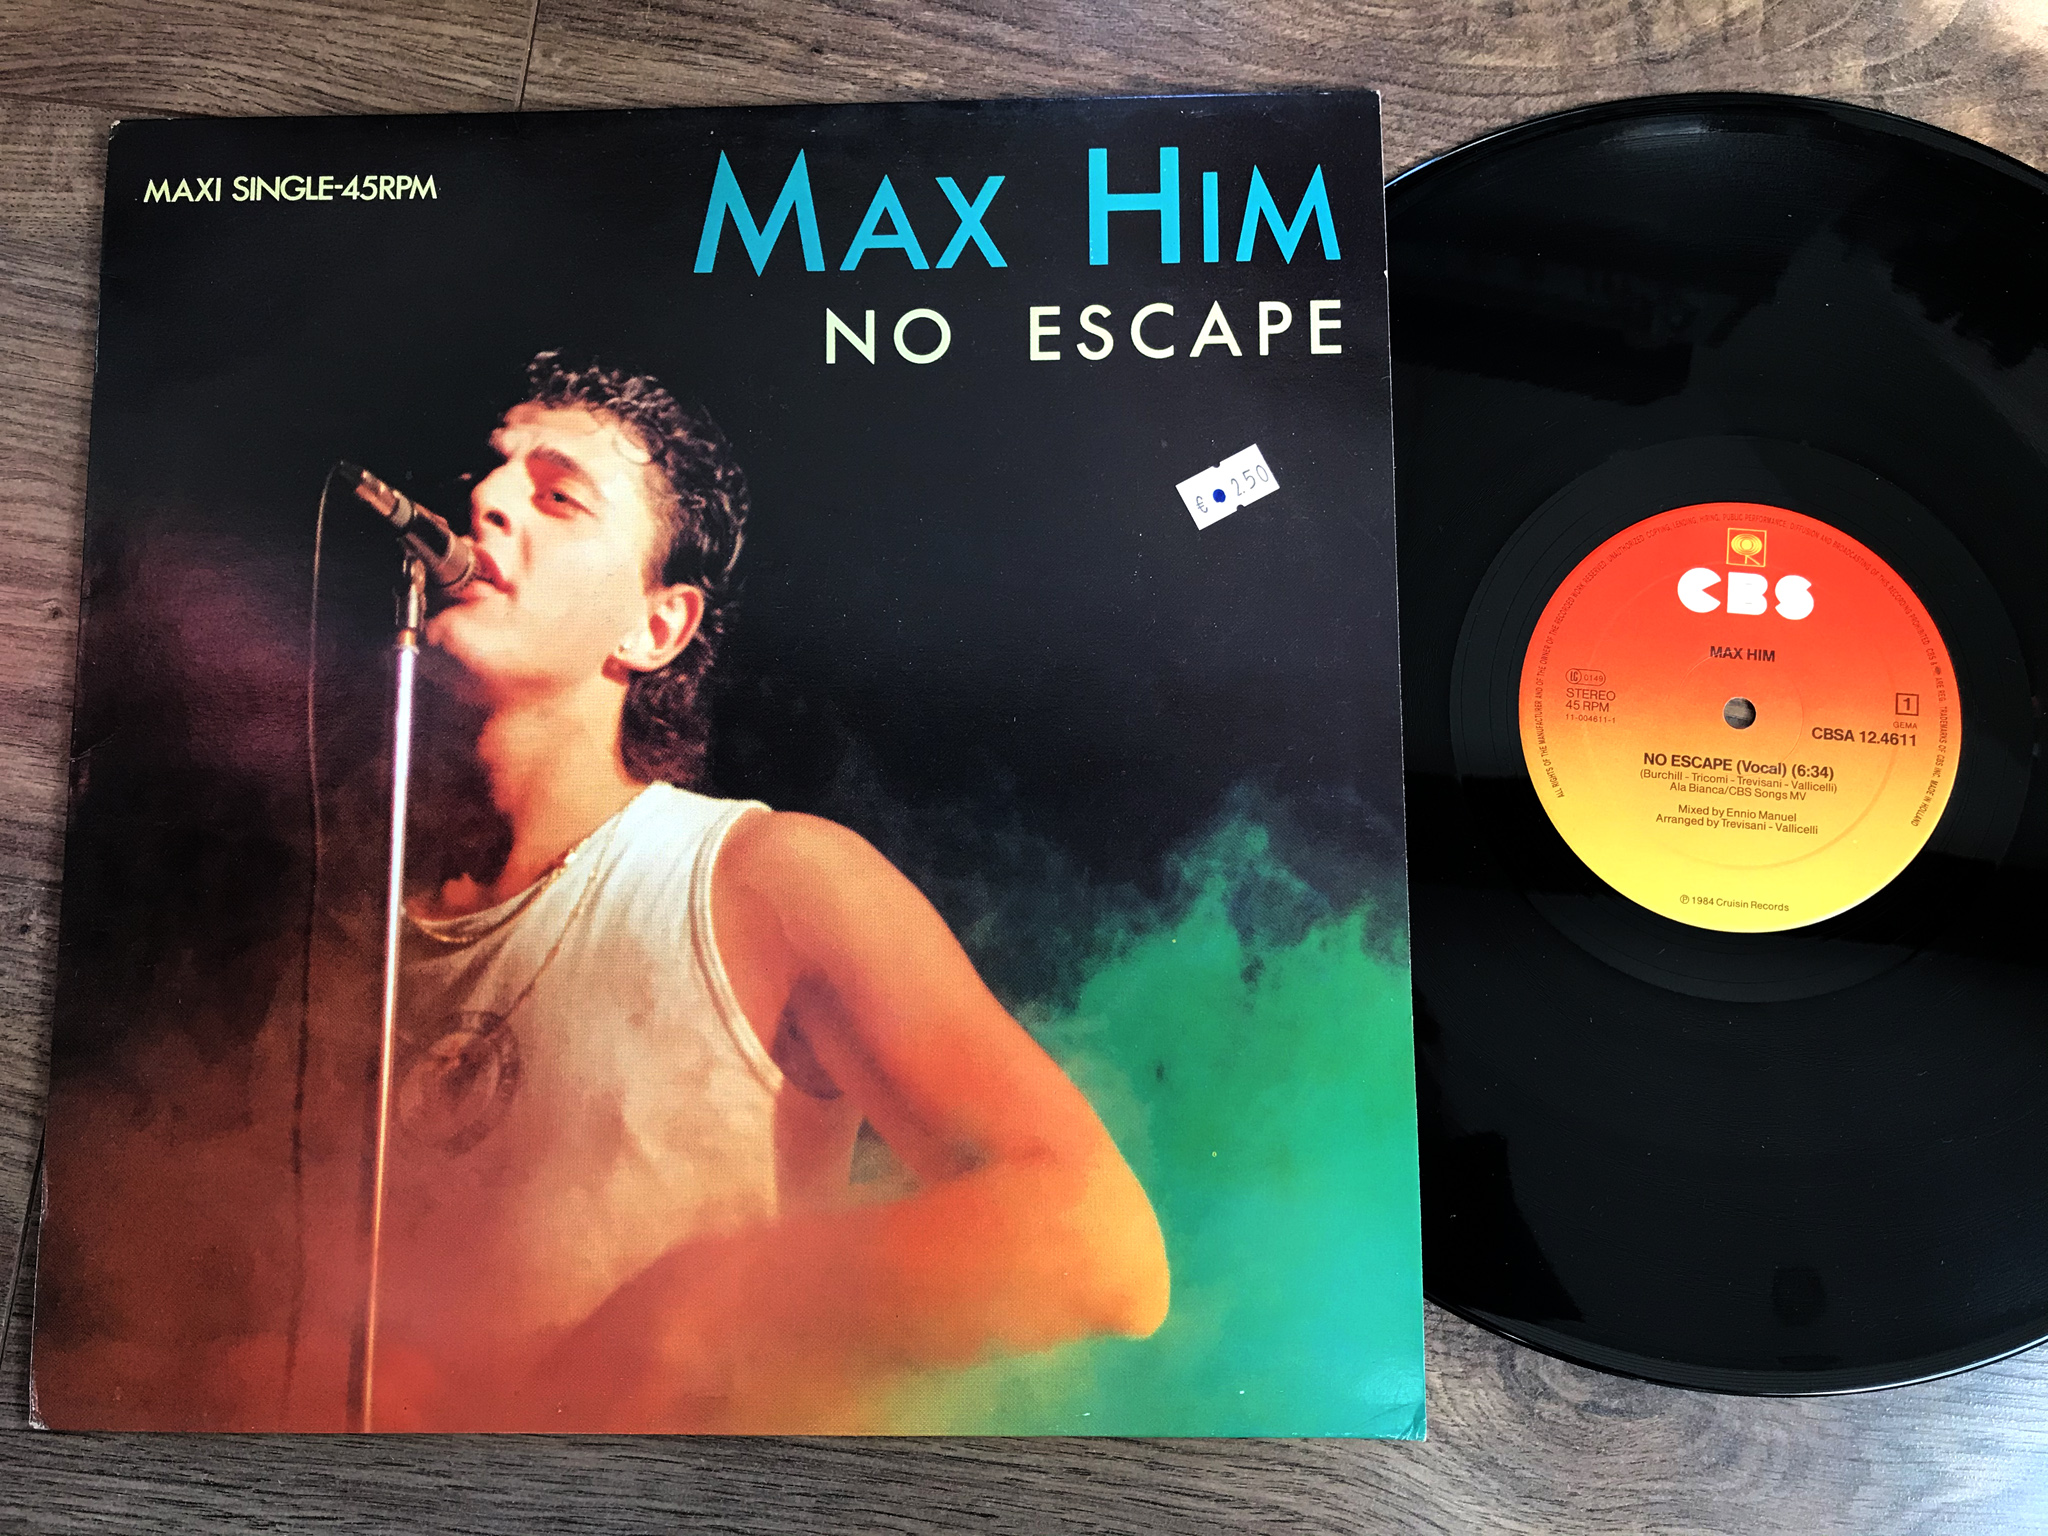 Max Him - No Escape